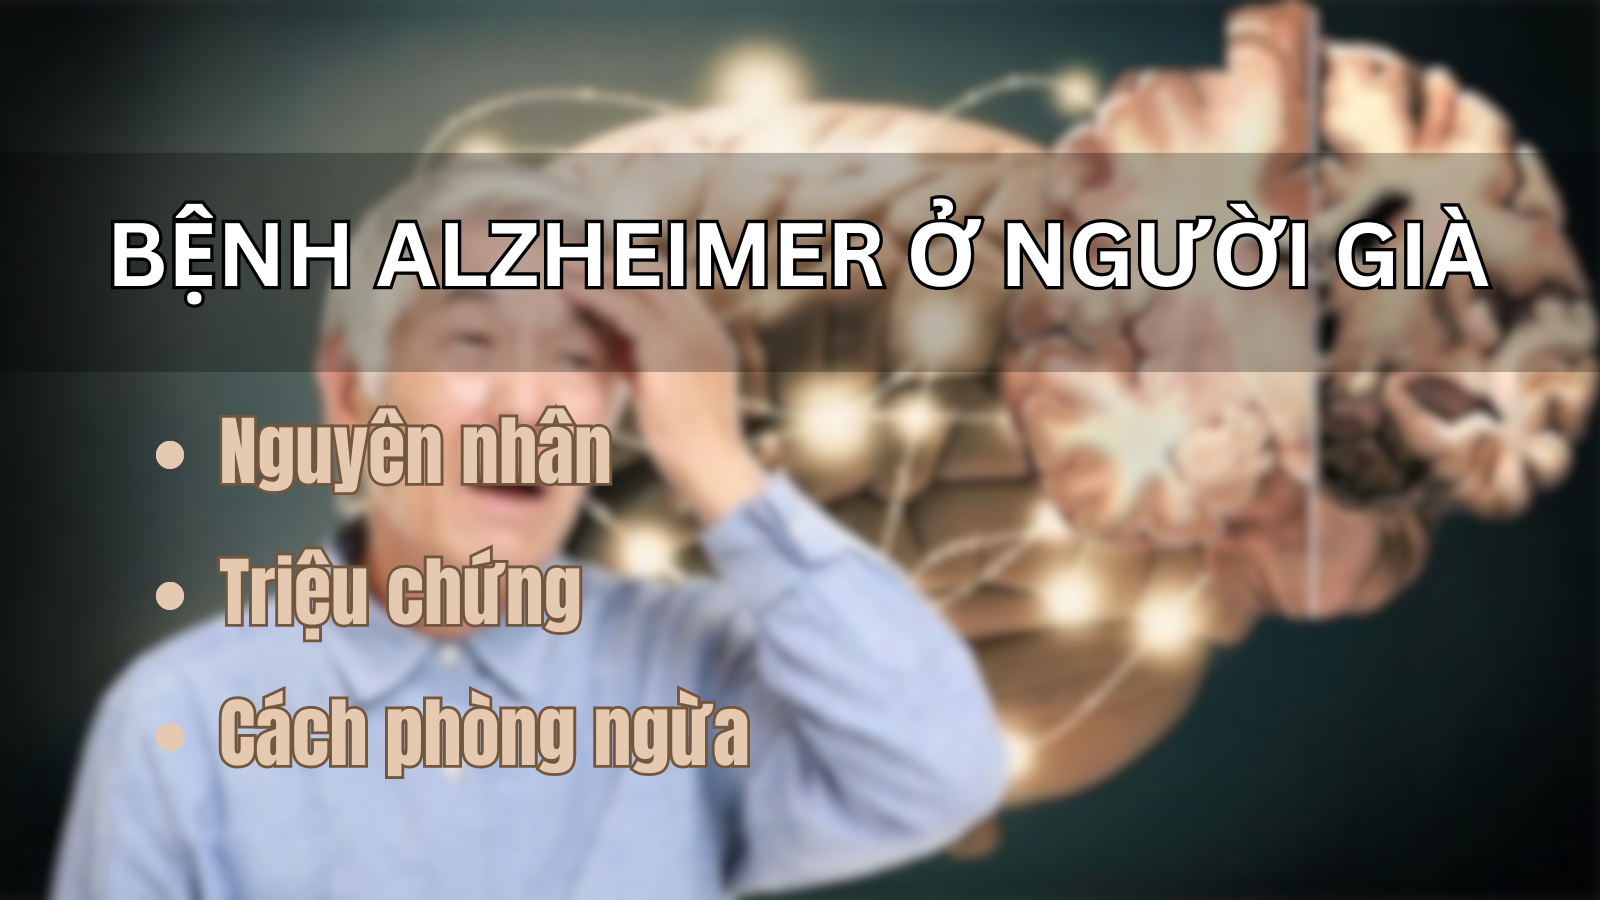 You are currently viewing Bệnh Alzheimer ở người già: Nguyên nhân, triệu chứng và cách phòng ngừa